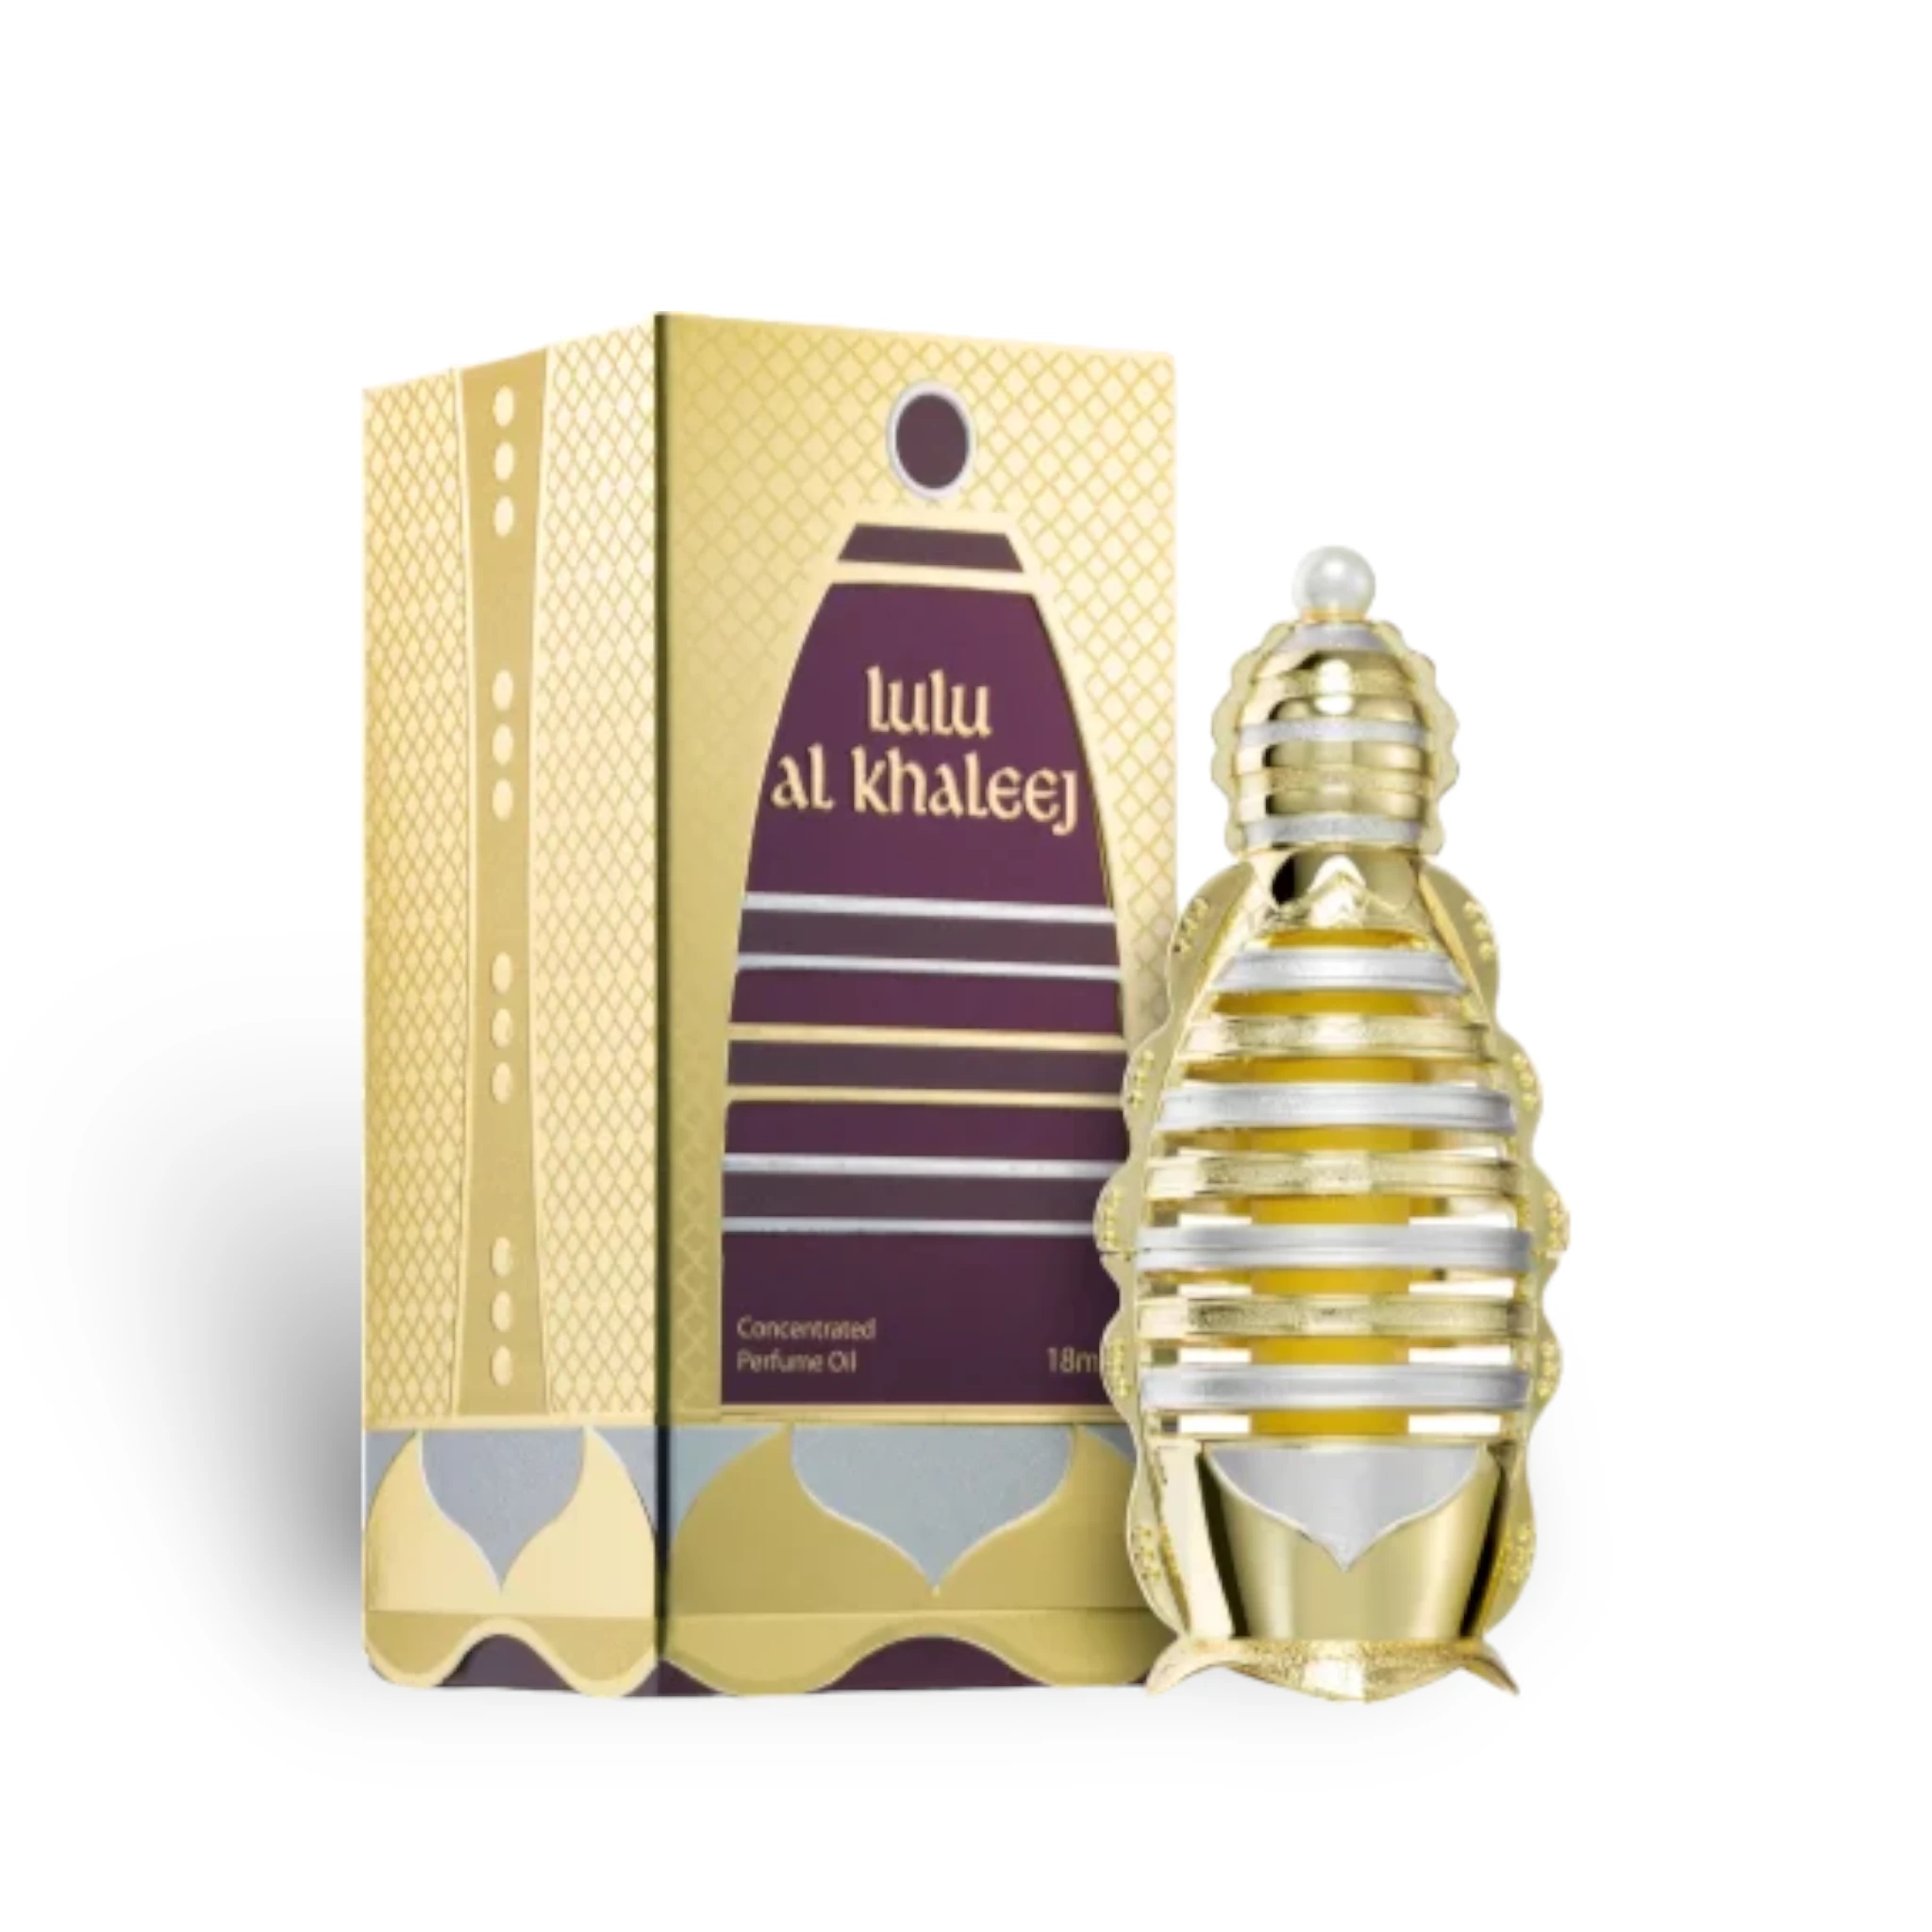 Lulu Al Khaleej Concentrated Perfume Oil Attar 18Ml By Khadlaj